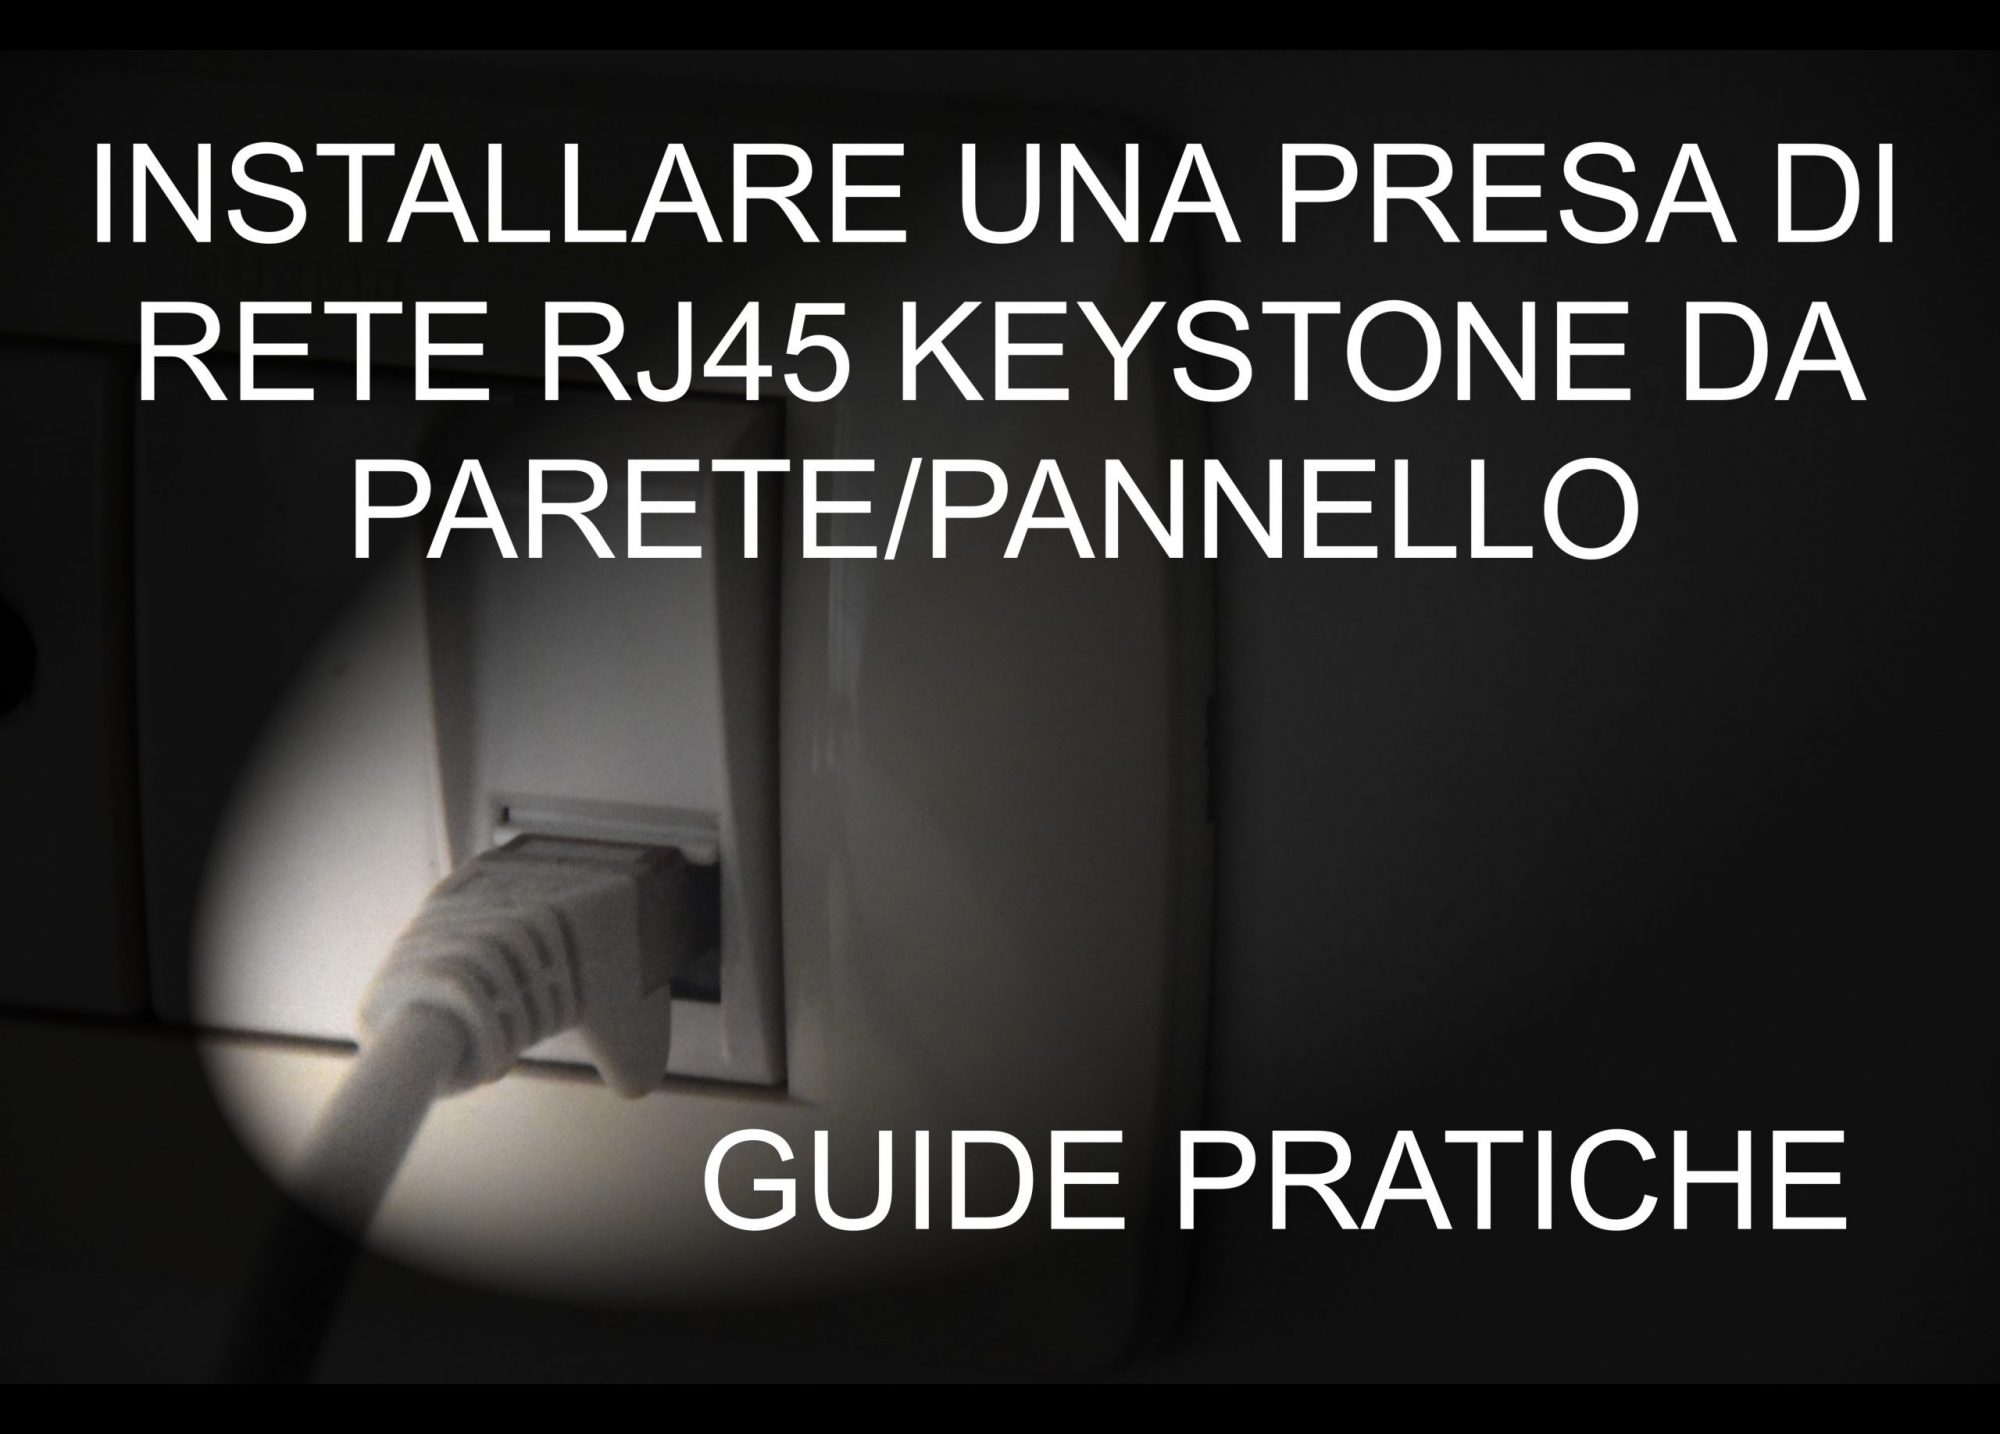 Come si installa una Presa di Rete RJ45 da parete / pannello / muro LAN  CABLAGGIO CABLARE KEYSTONE 